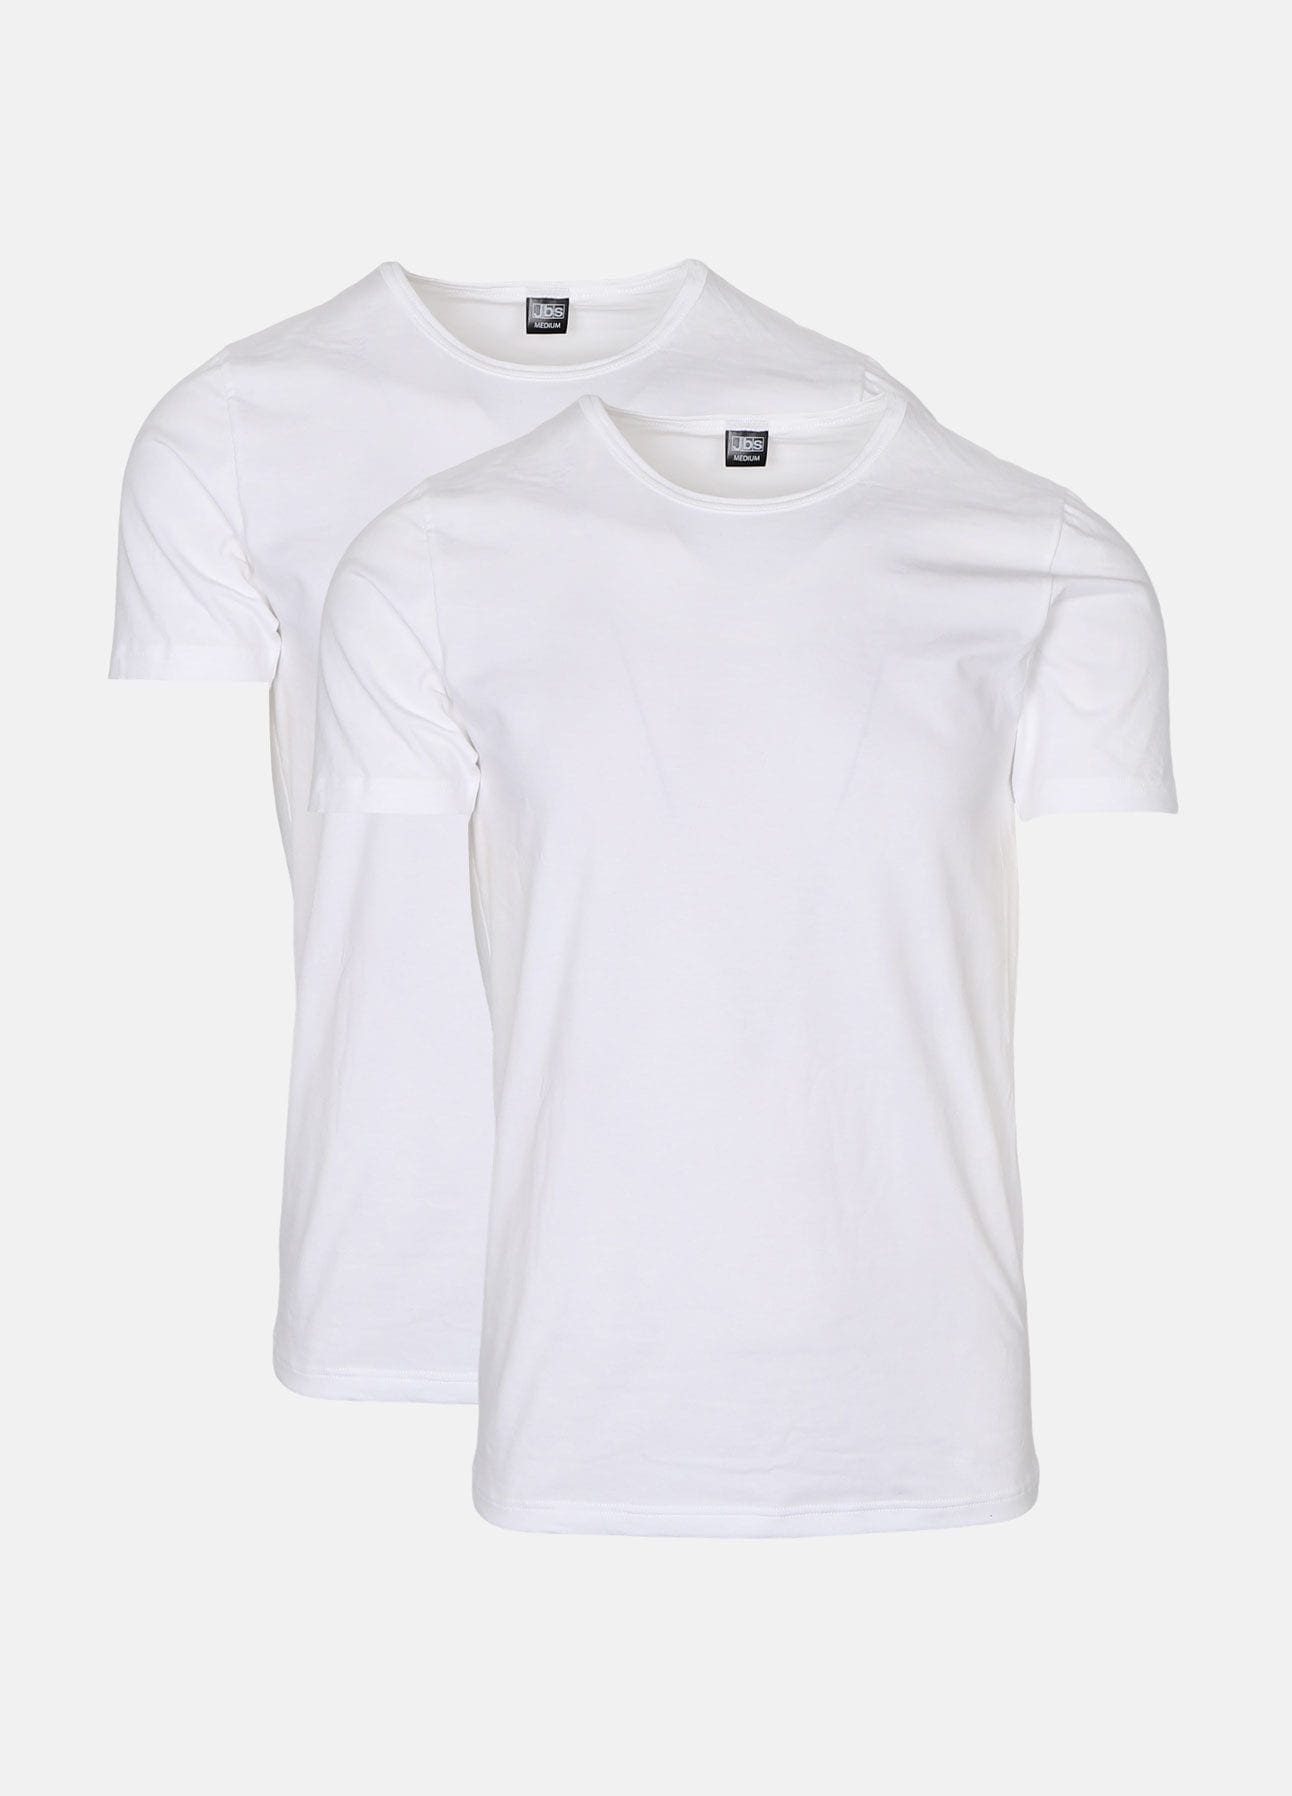 Hvide t-shirts fra JBS